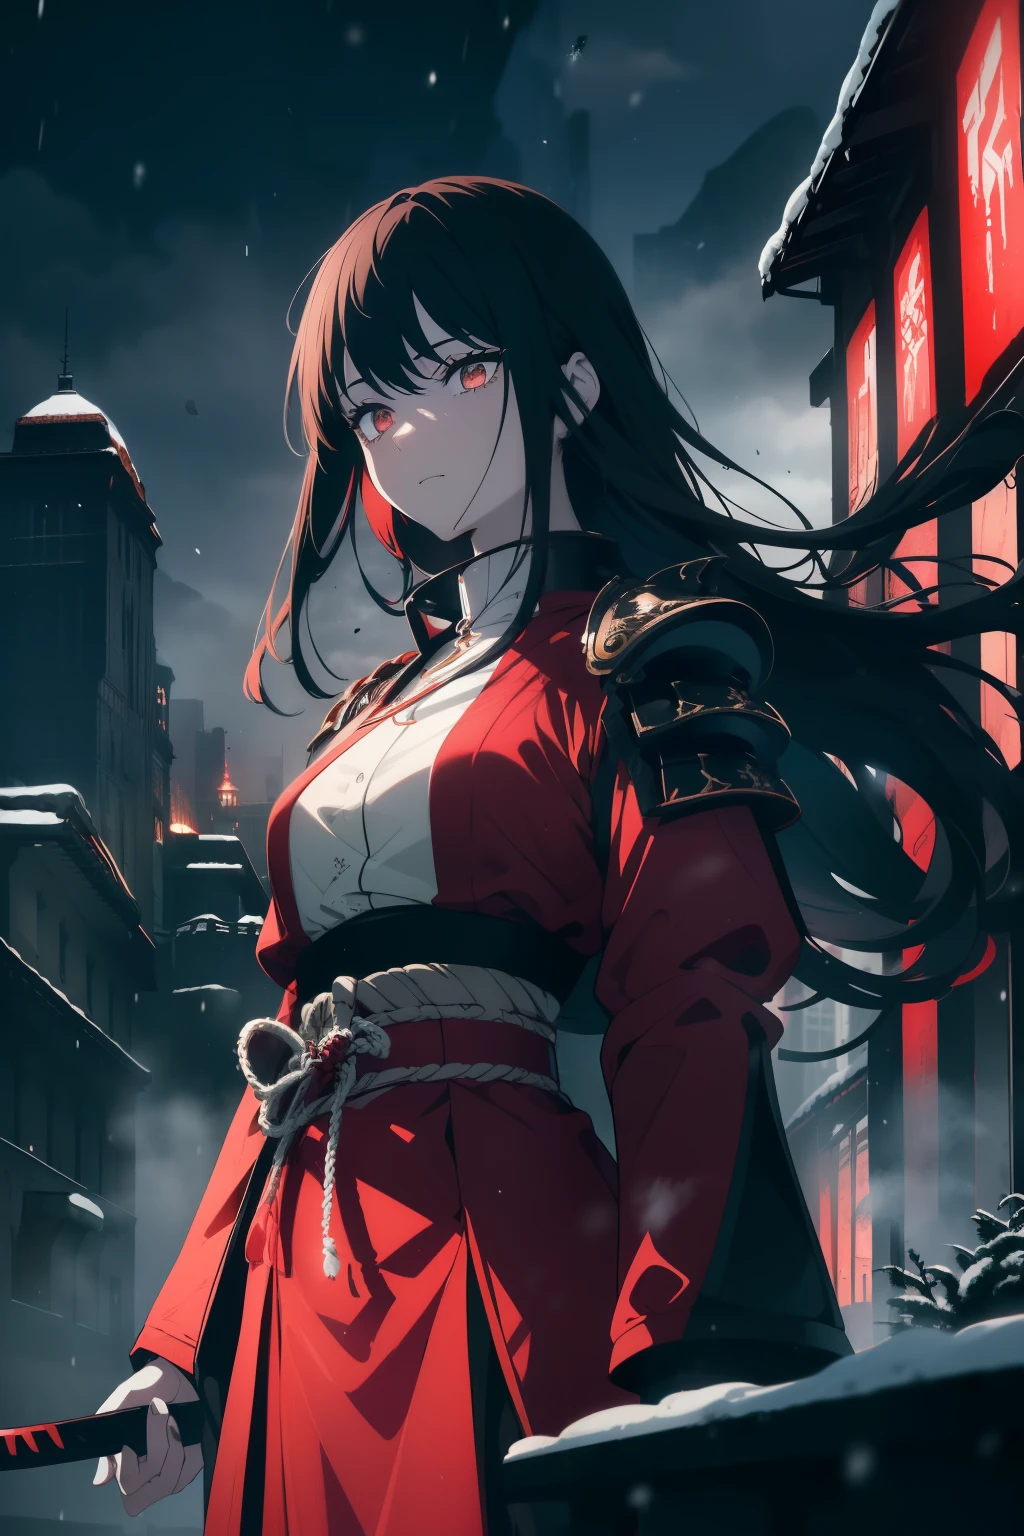 ((Obra-prima, A melhor qualidade, resolução ultra-alta)), ((uma garota com uma armadura vermelha de samurai, de pé com confiança, pronto para lutar)), ((Katanas, nas costas, katana de mão, atacando o espectador com katana)), (vento no cabelo), ((samurai , vestido com armadura de aço vermelho, armadura de placa vermelha)), ((Cabelo preto, dark Cabelo preto)), corte de cabelo longo, pele pálida, ((brown olhos)), ((brilhante_olhos)), neon olhos, (ultra detailed olhos:0.7, rosto lindo e detalhado, detailed olhos:0.9), visualizador de frente, Nivél dos olhos, ((vibrant fundo, nevey landscape, paisagem urbana, neveing, neve)), peito achatado, Olhando para o visualizador, ((half closed olhos)), ((mãos perfeitas)), (((cabeça:1, braços, quadris, cotovelos, em vista))), mãos atrás das costas, ((fiery olhos)), bela iluminação, fora, ao ar livre, fundo, assunto definido, 25 anos de idade, (cabeça tilt), (((Um muito lindo, imagem legal e animada)))